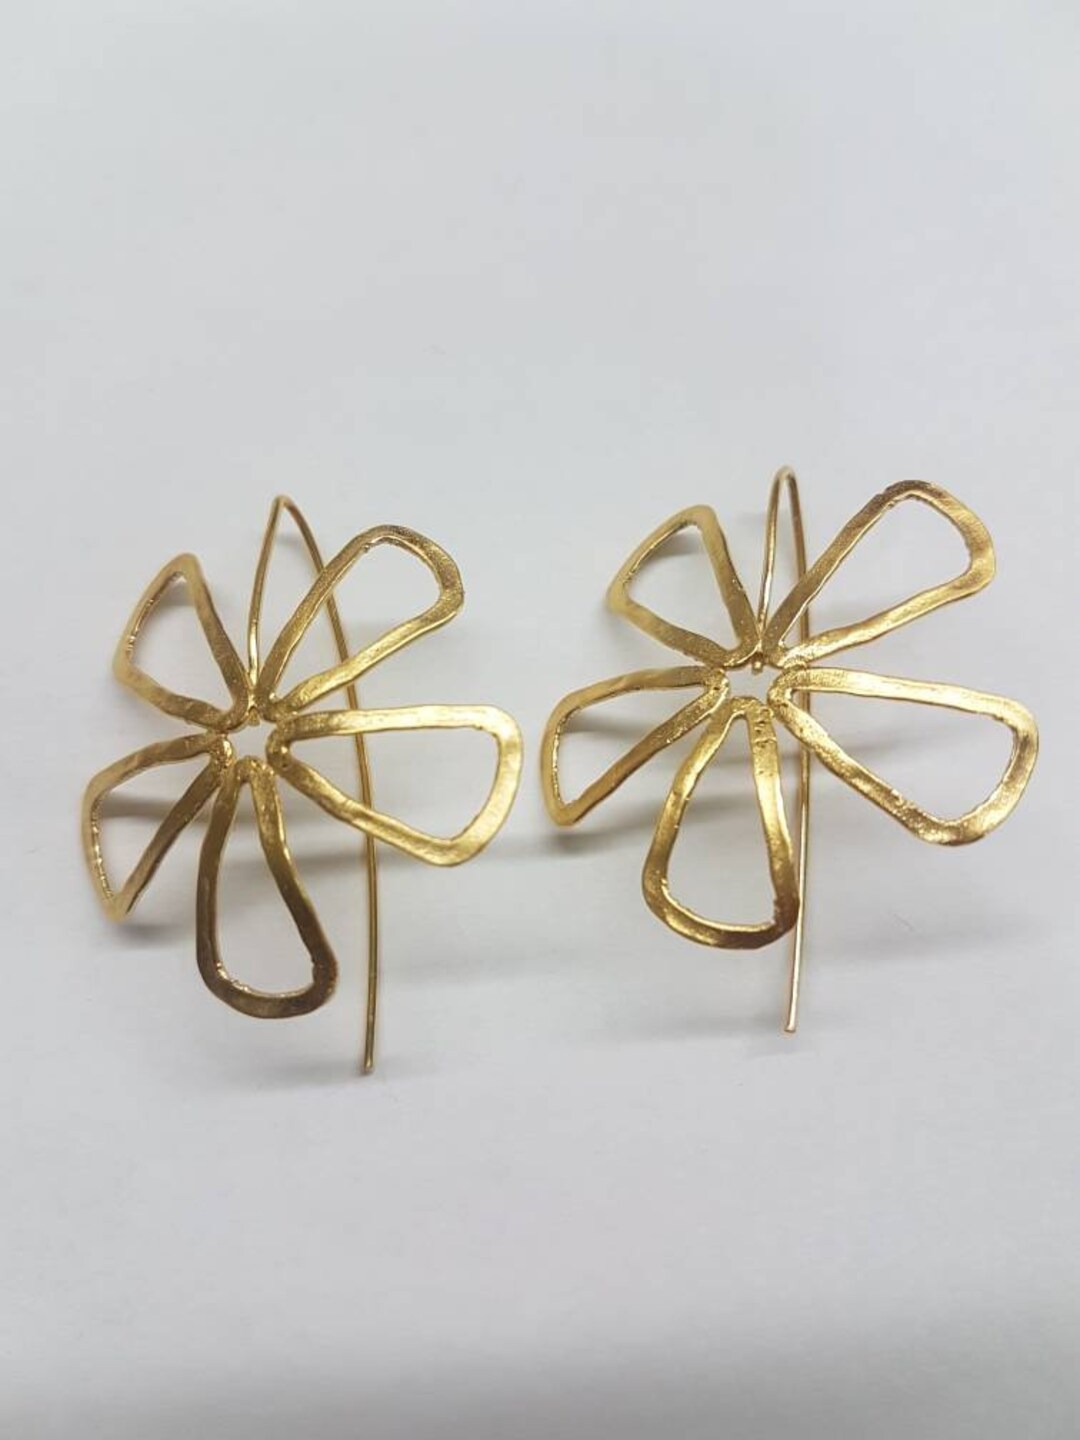 Gold Flower Earrings Drop Flower Earrings Gold Delicate - Etsy